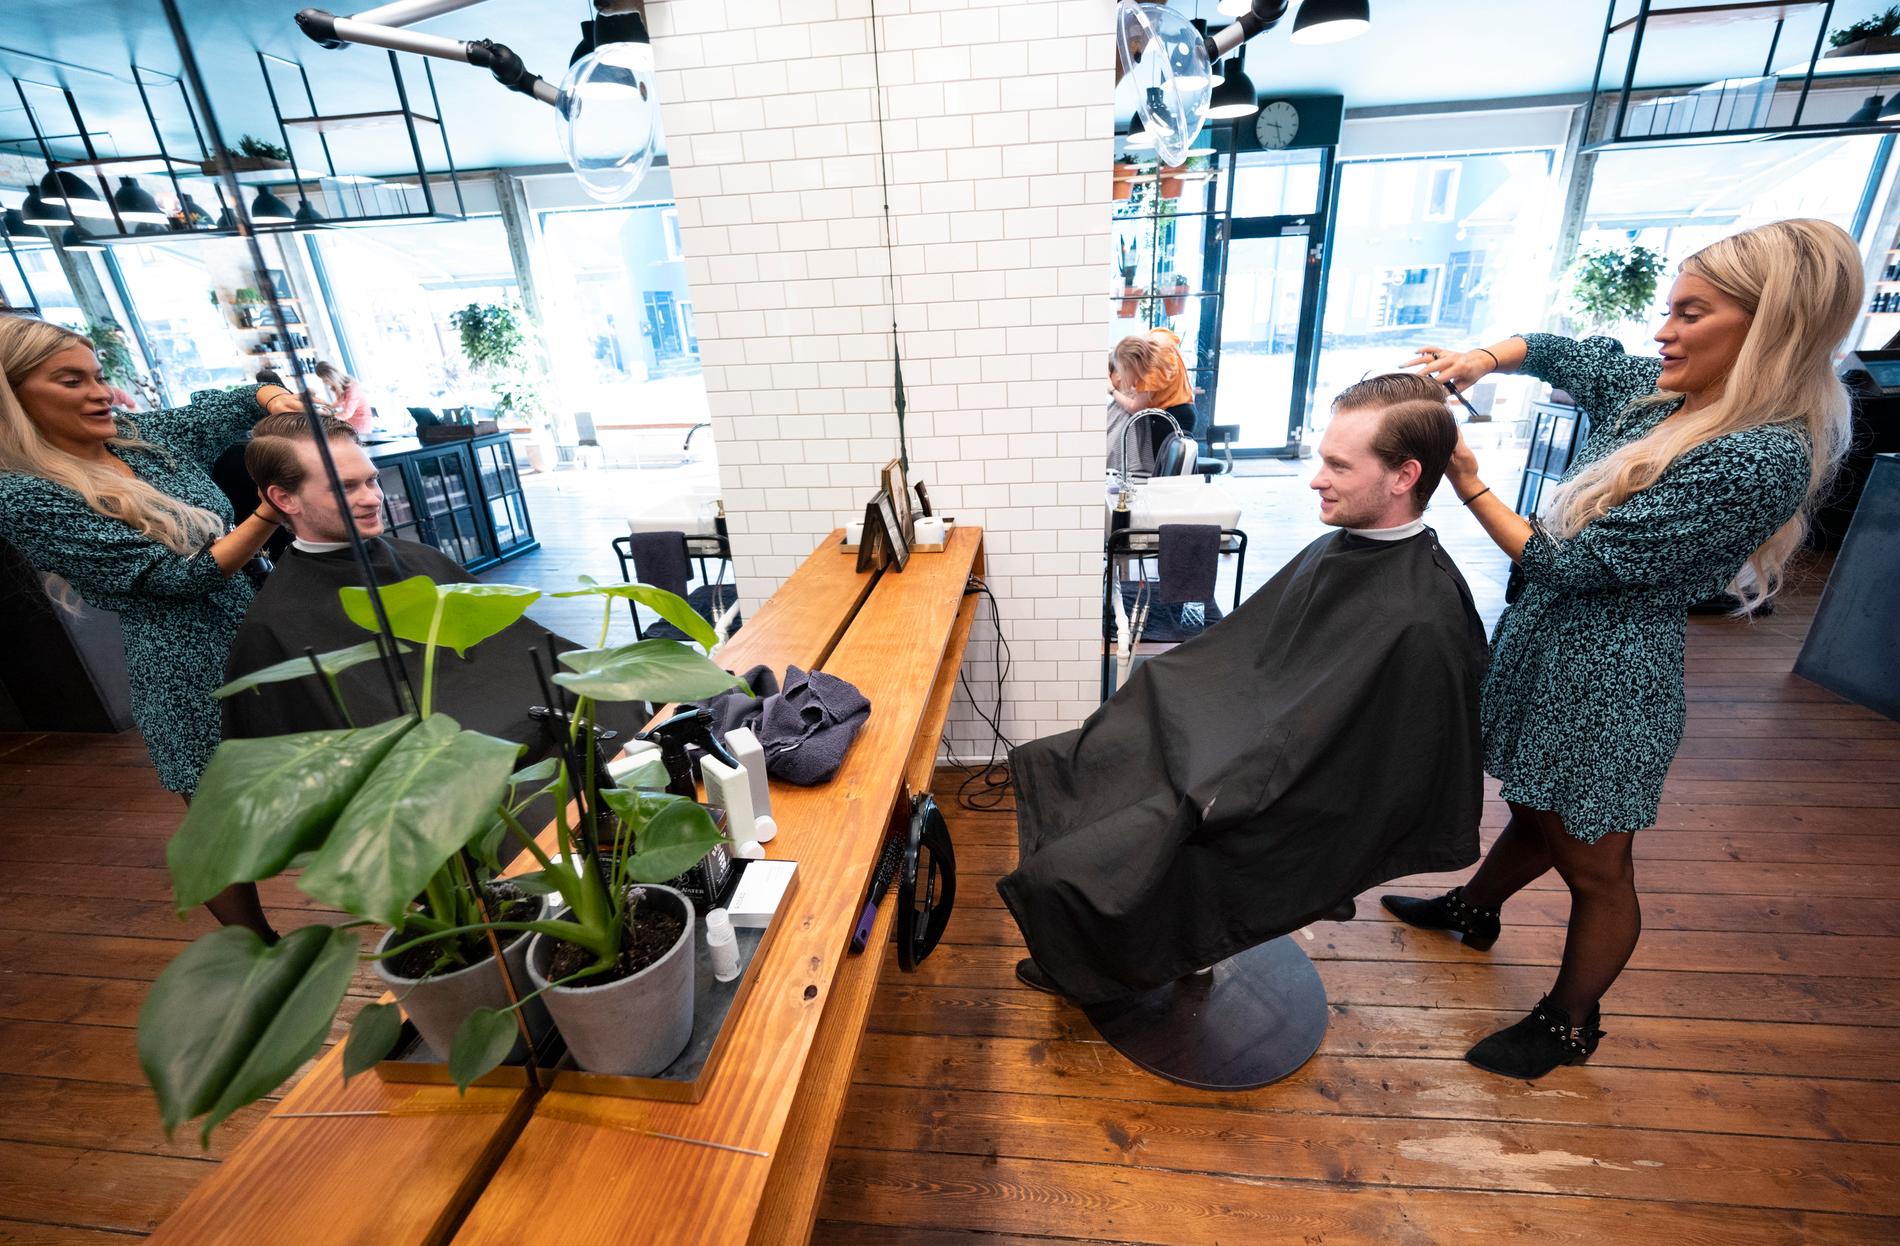 Christian Mejlvang, masterstudent, får håret klippt av frisör Katrine De Witt, på Rodeo i Valby i Köpenhamn. Det var nästan tre månader sedan han klippte sig.